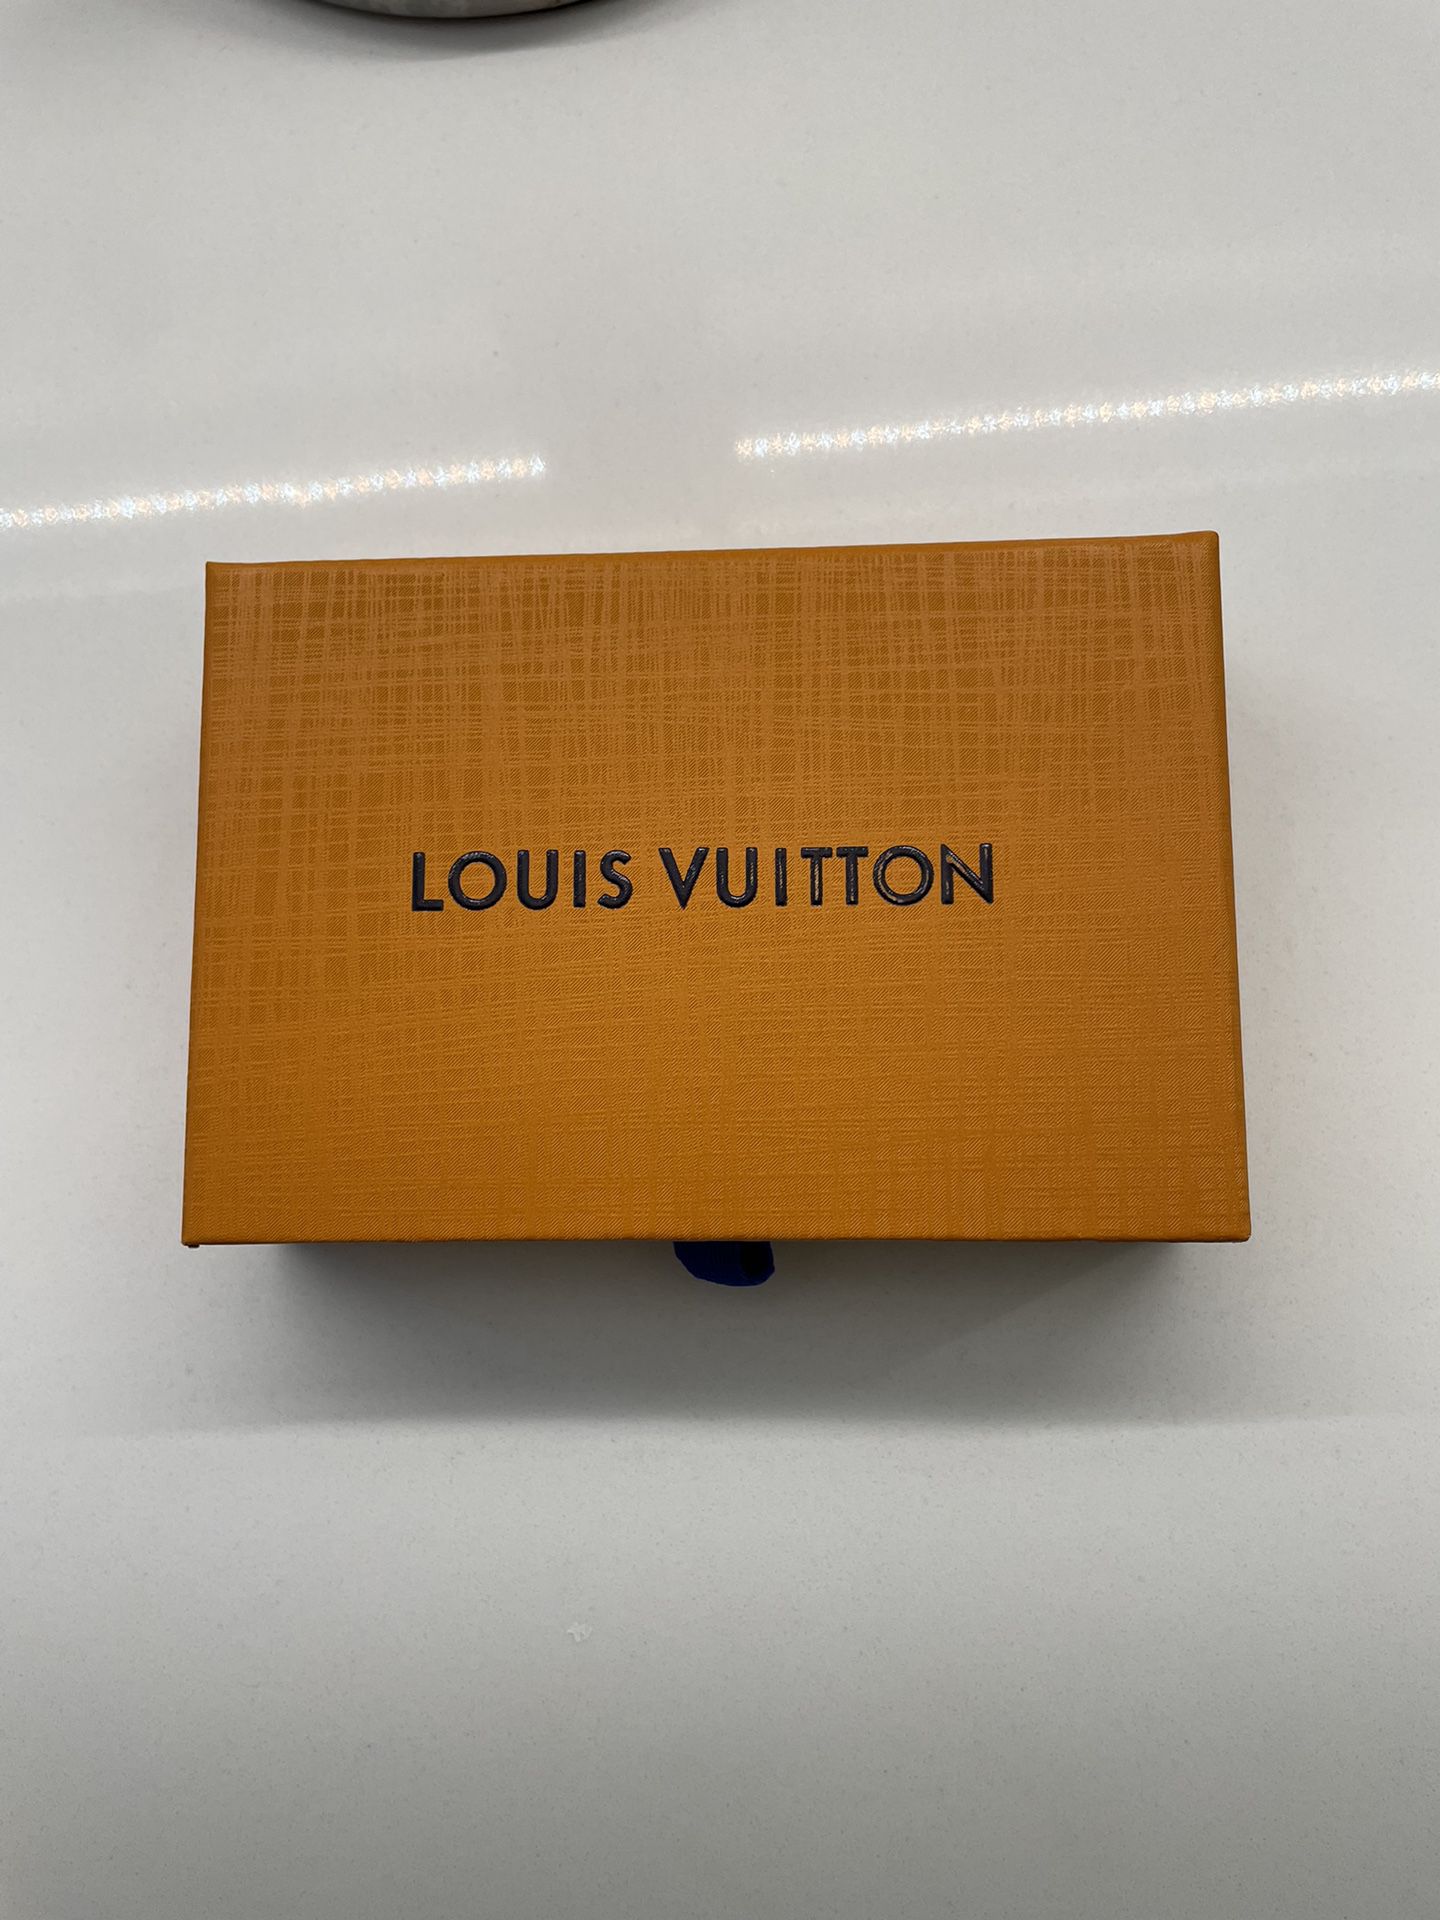 *BEST OFFER* Louis Vuitton Slim Bracelet - Excellent Condition